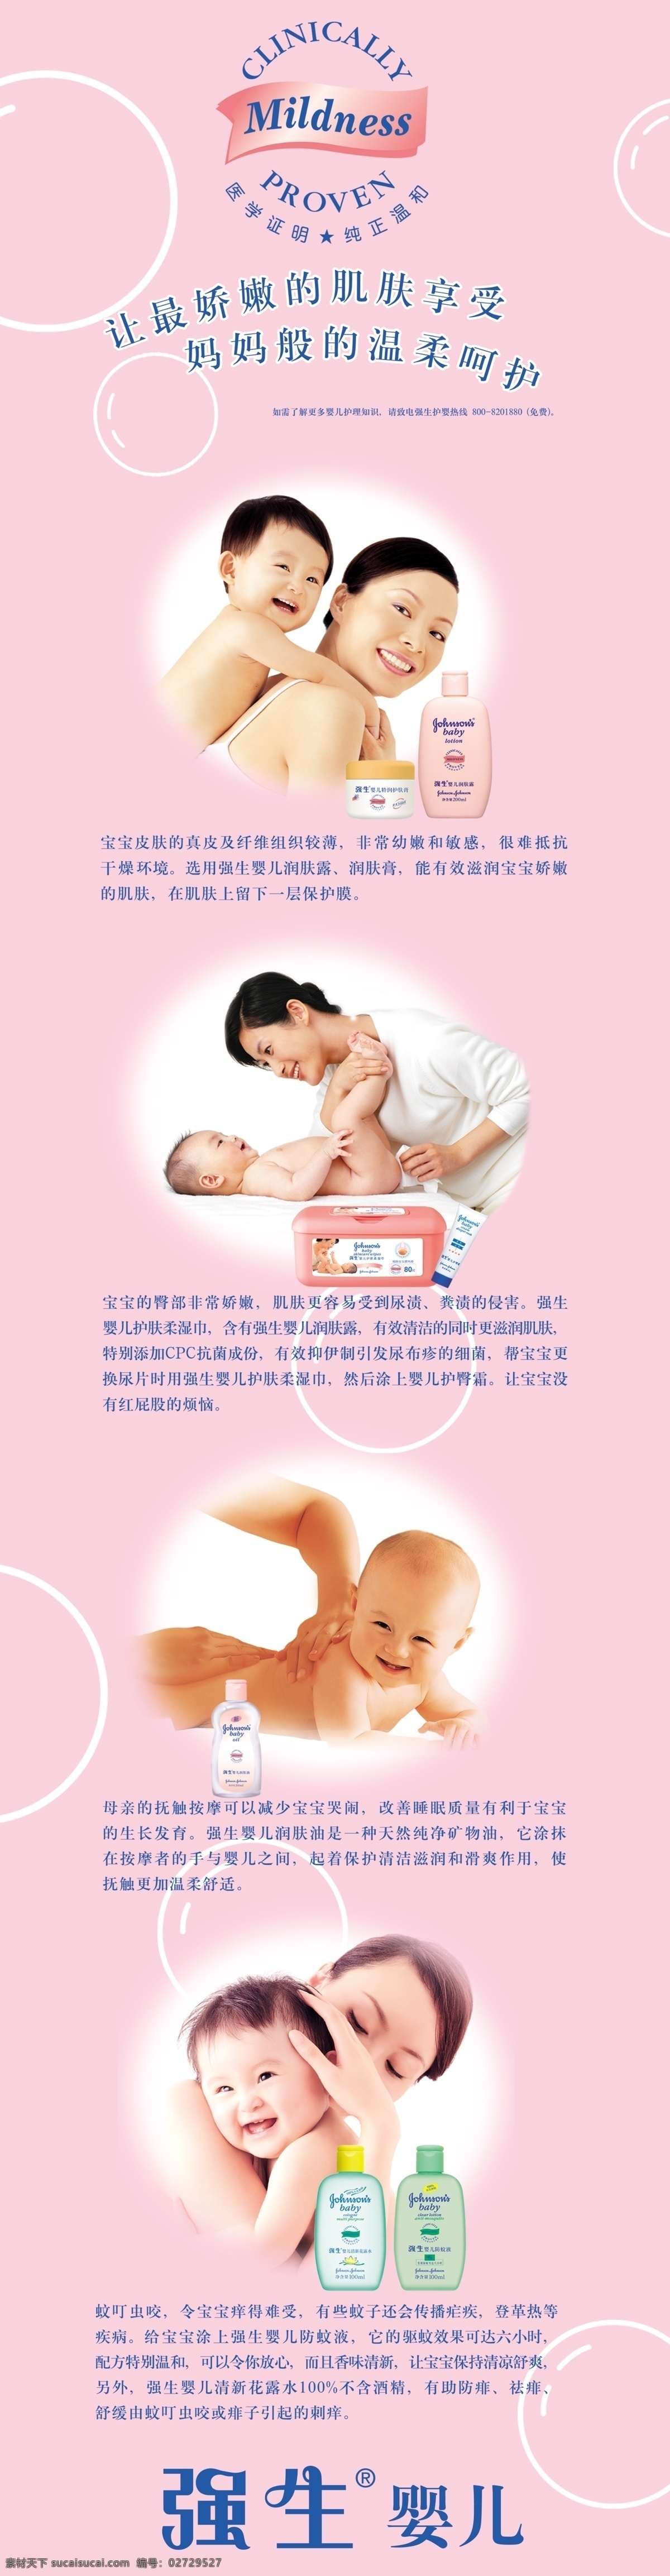 强生 婴儿 产品 介绍 婴儿润肤油 婴儿防蚊液 婴儿润肤露 润肤膏 呵护 护理 国内广告设计 广告设计模板 源文件